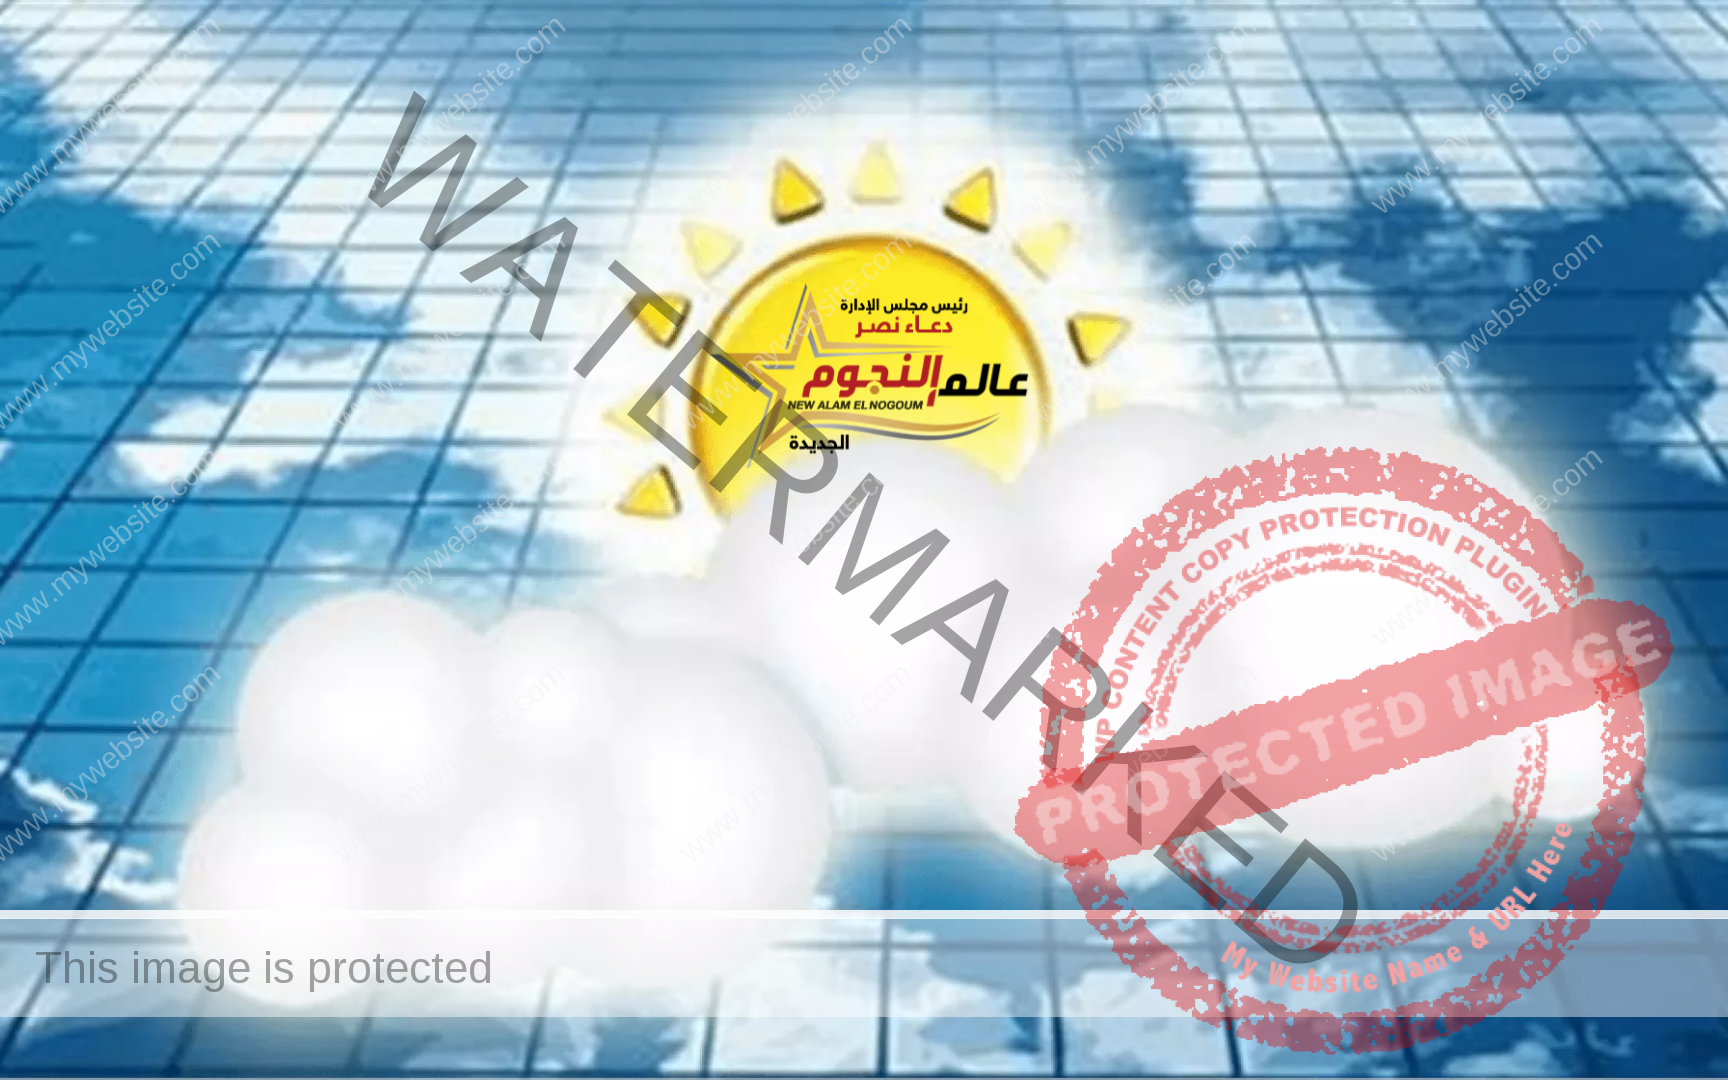 الأرصاد: طقس الأحد وبيان تفصيلي بدرجات الحرارة بـ محافظات مصر